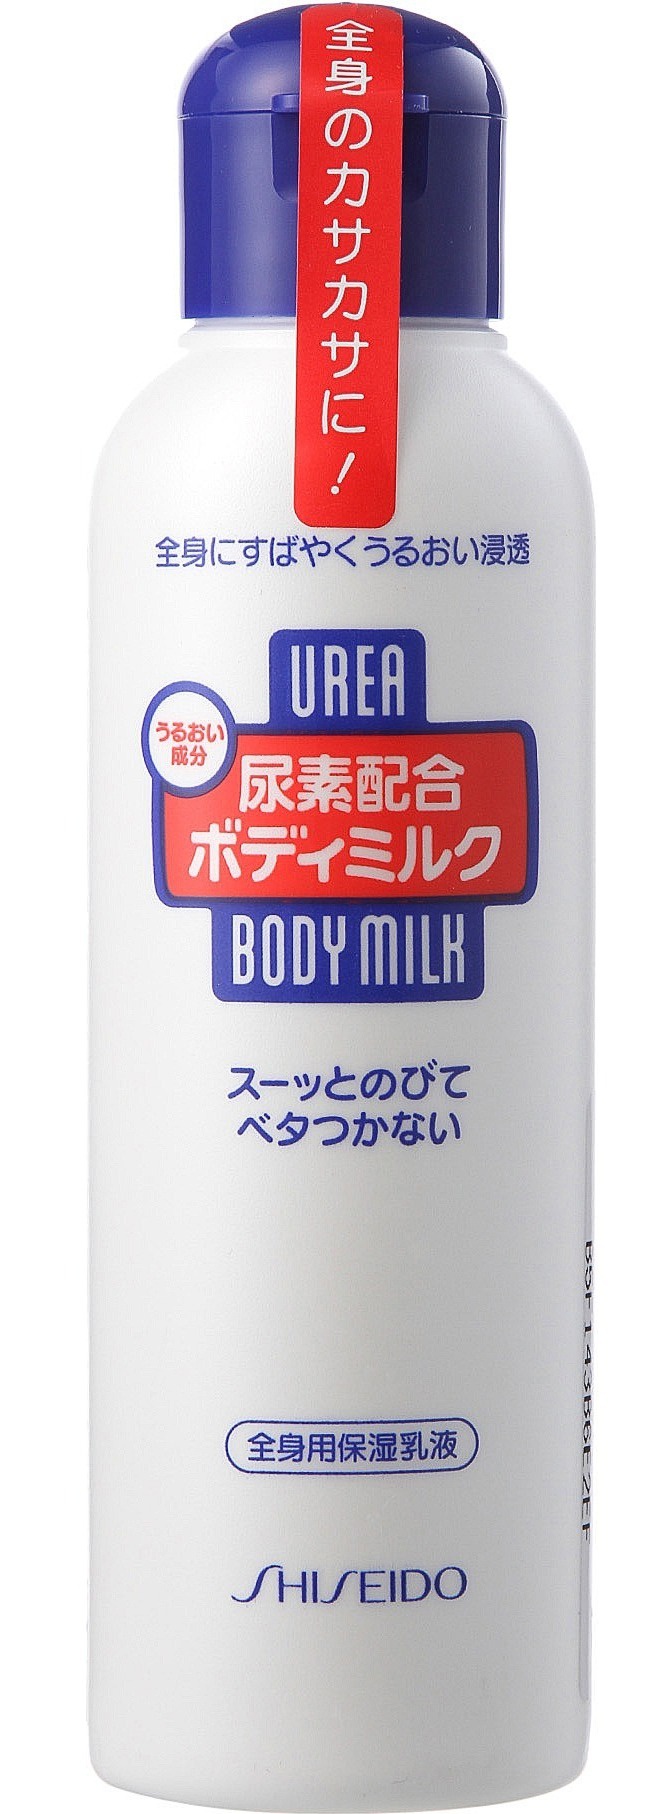 Shisheido Urea Body Milk